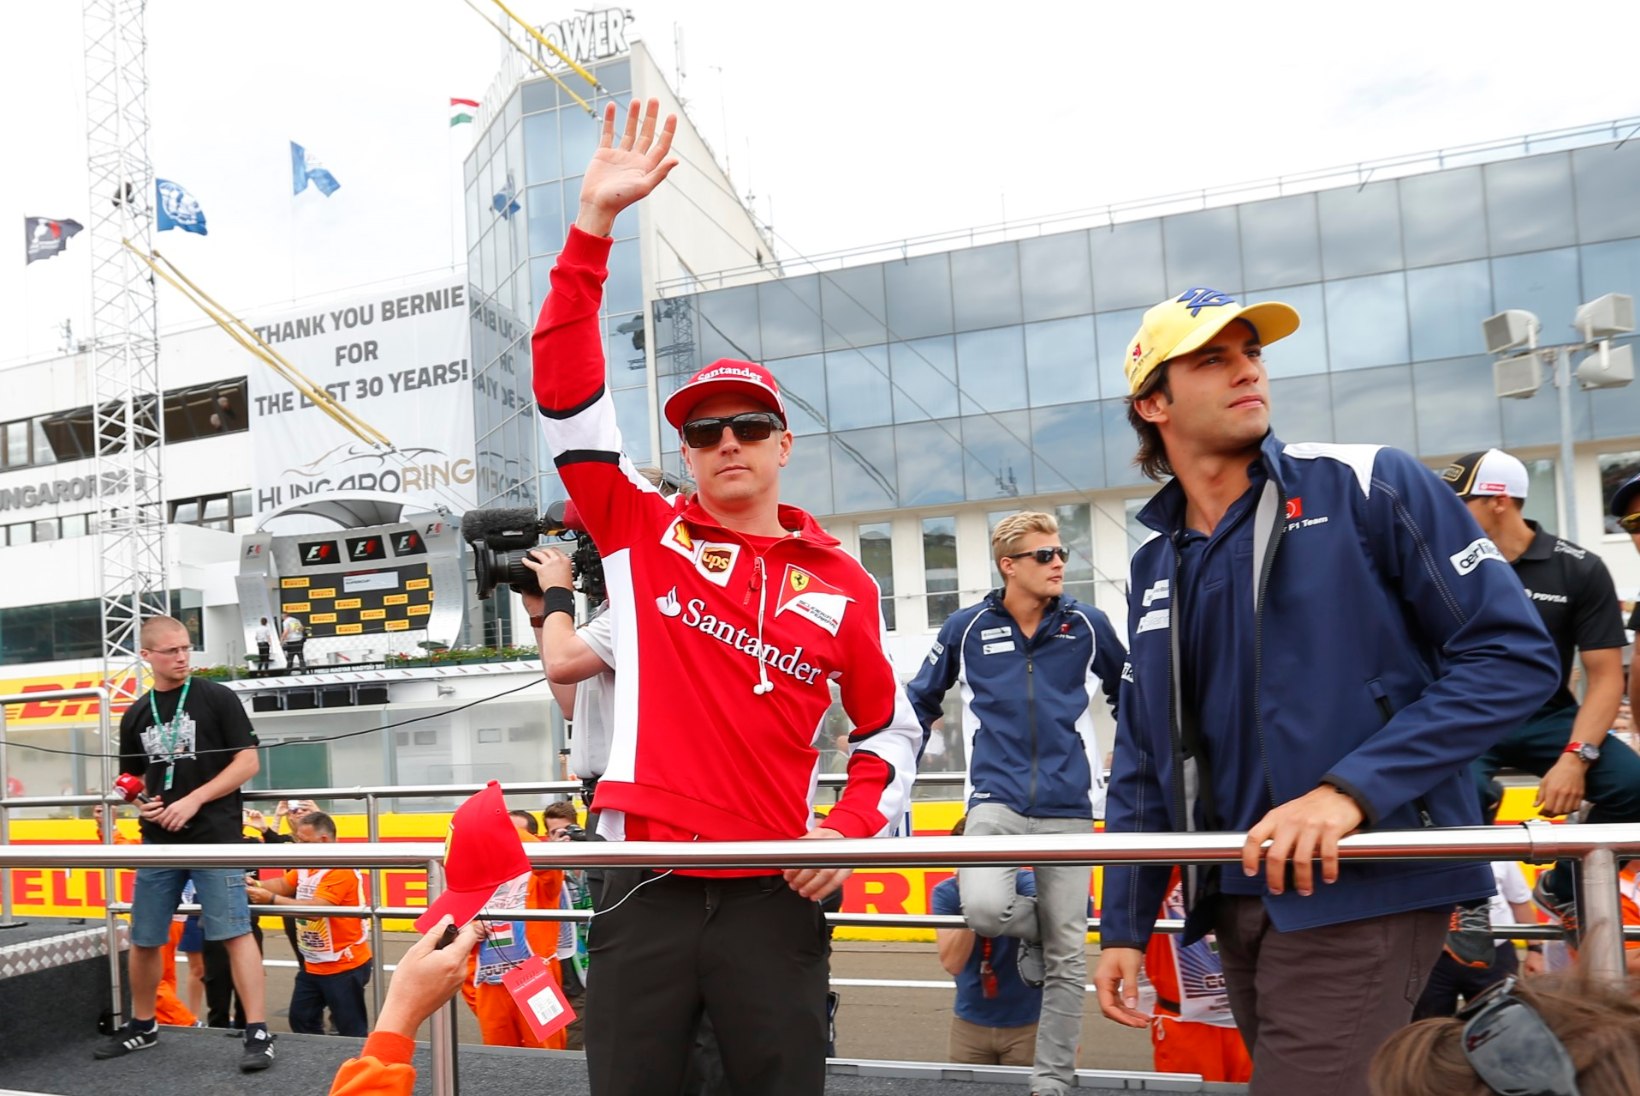 LÕPP KUULUJUTTUDELE! Kimi Räikkönen jätkab Ferraris!